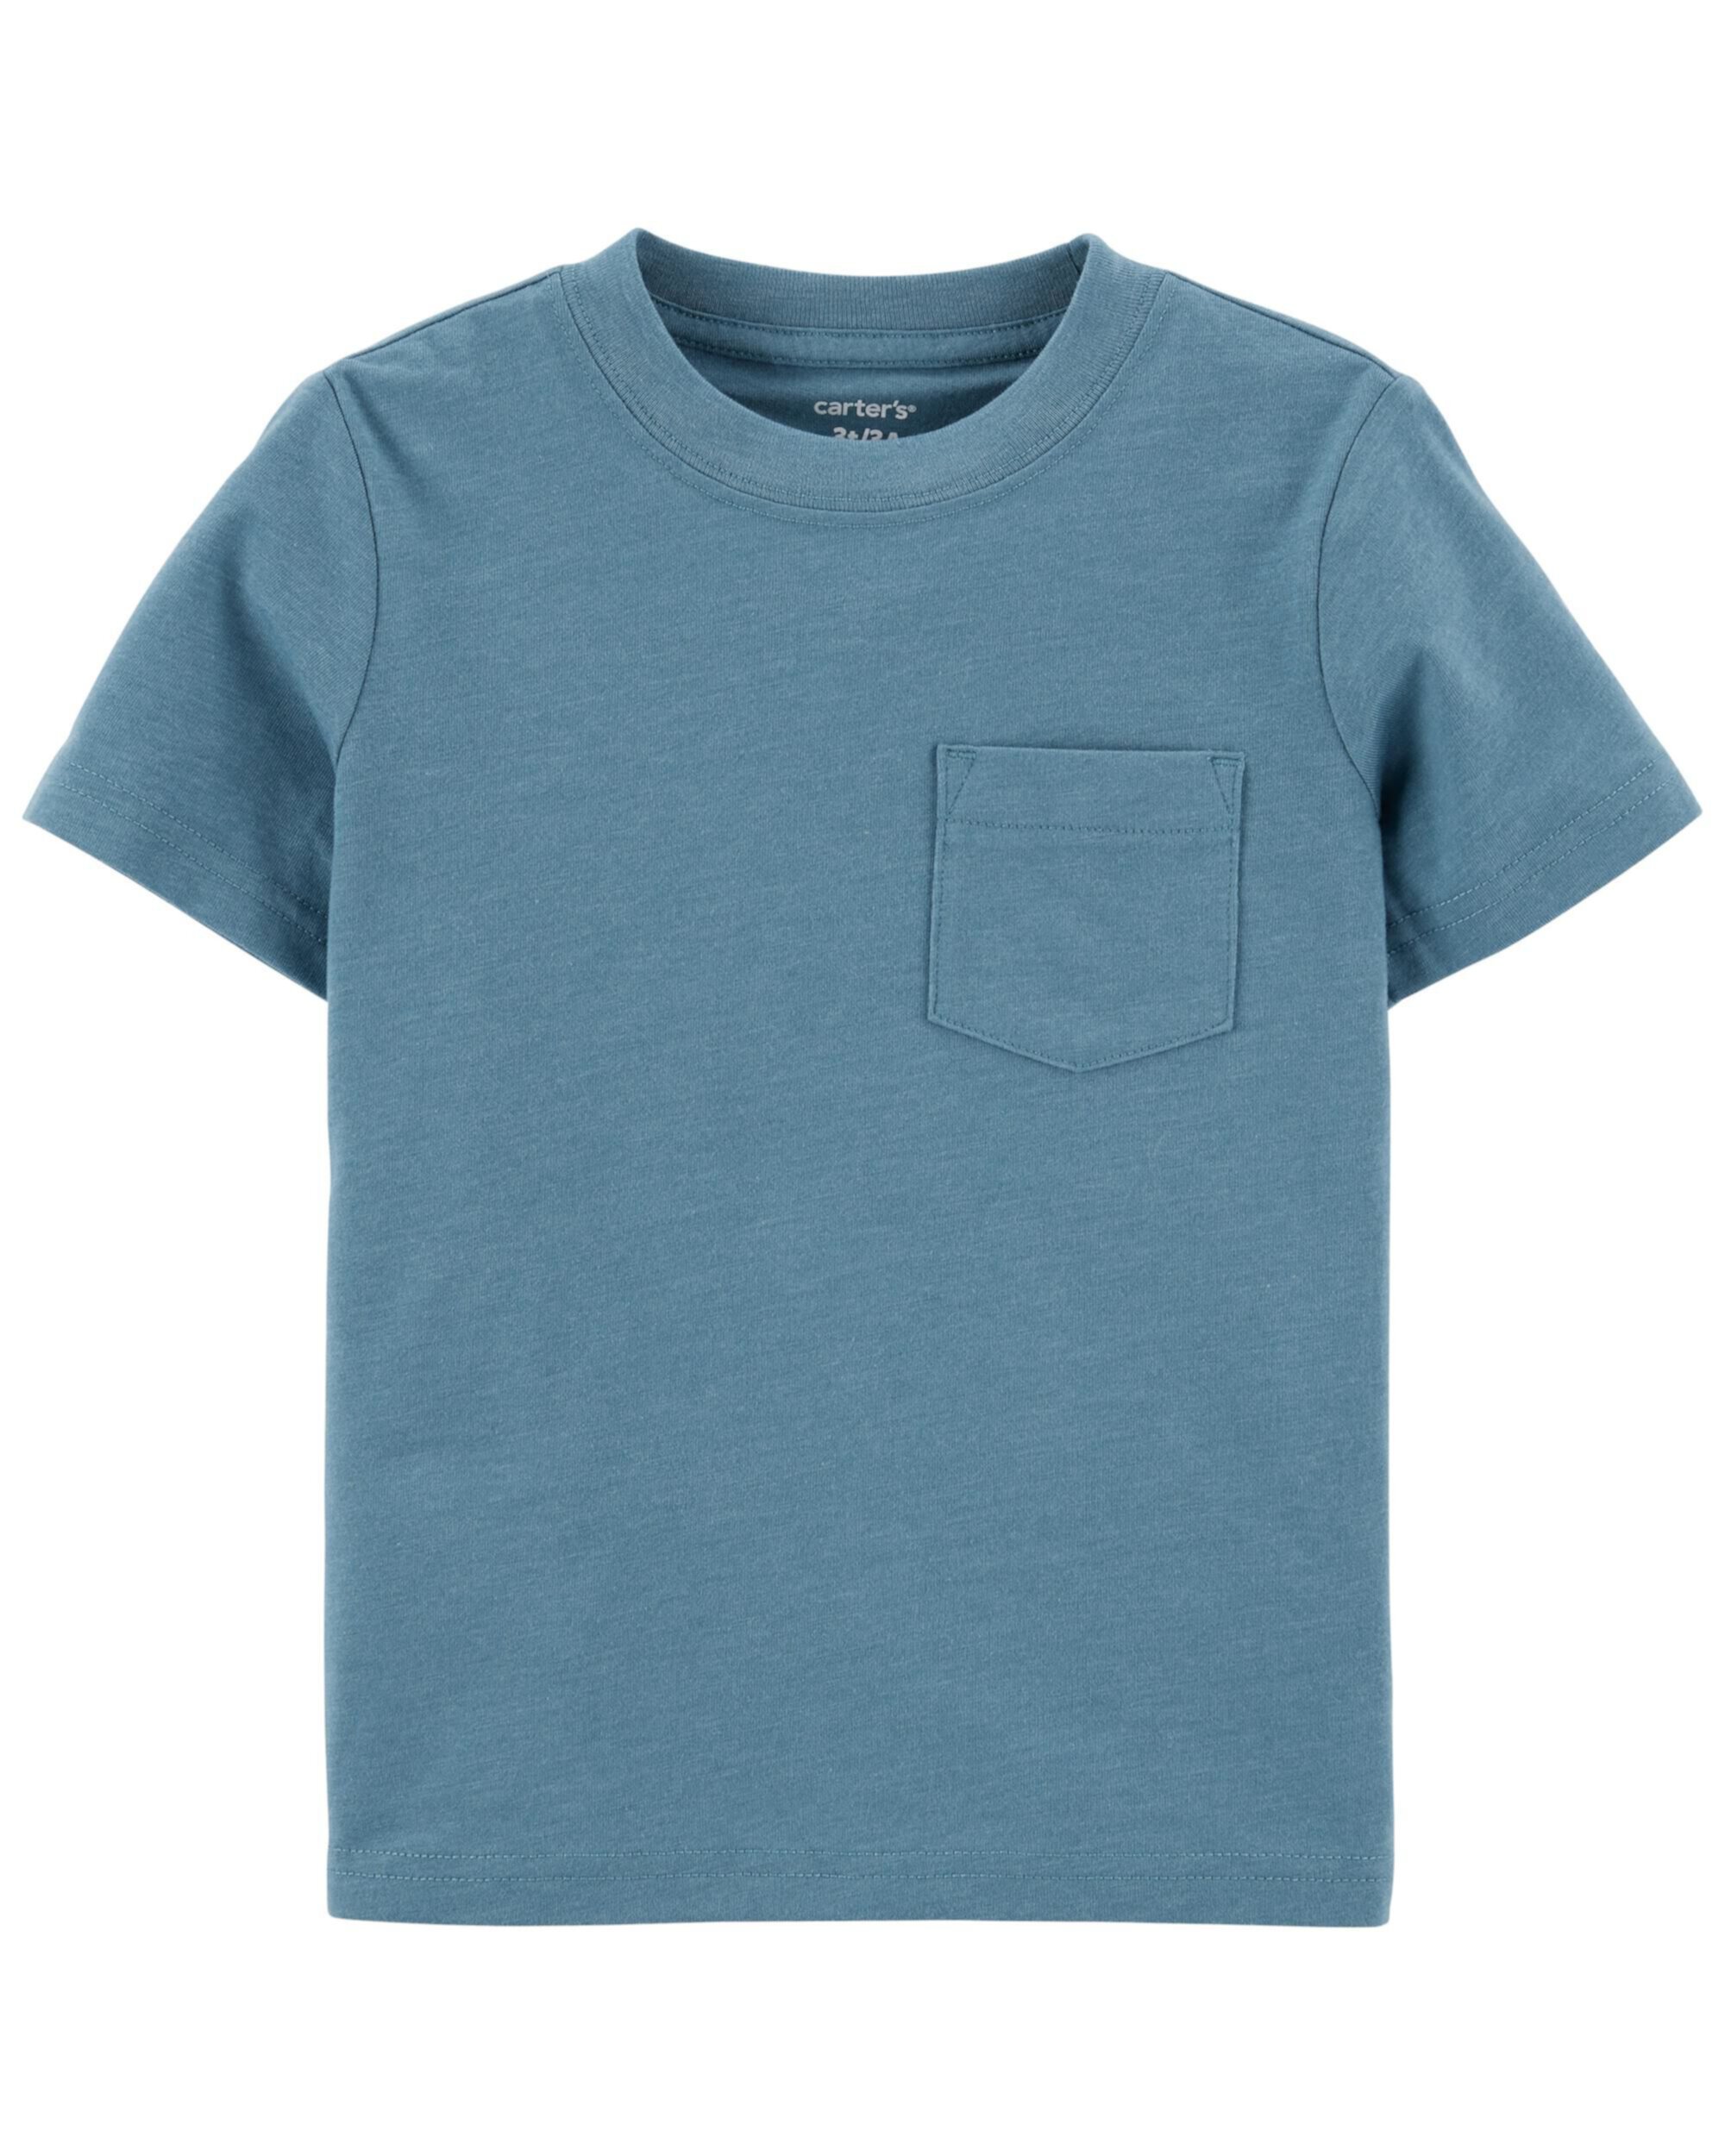 Трикотажная футболка с карманами для малышей Carter's